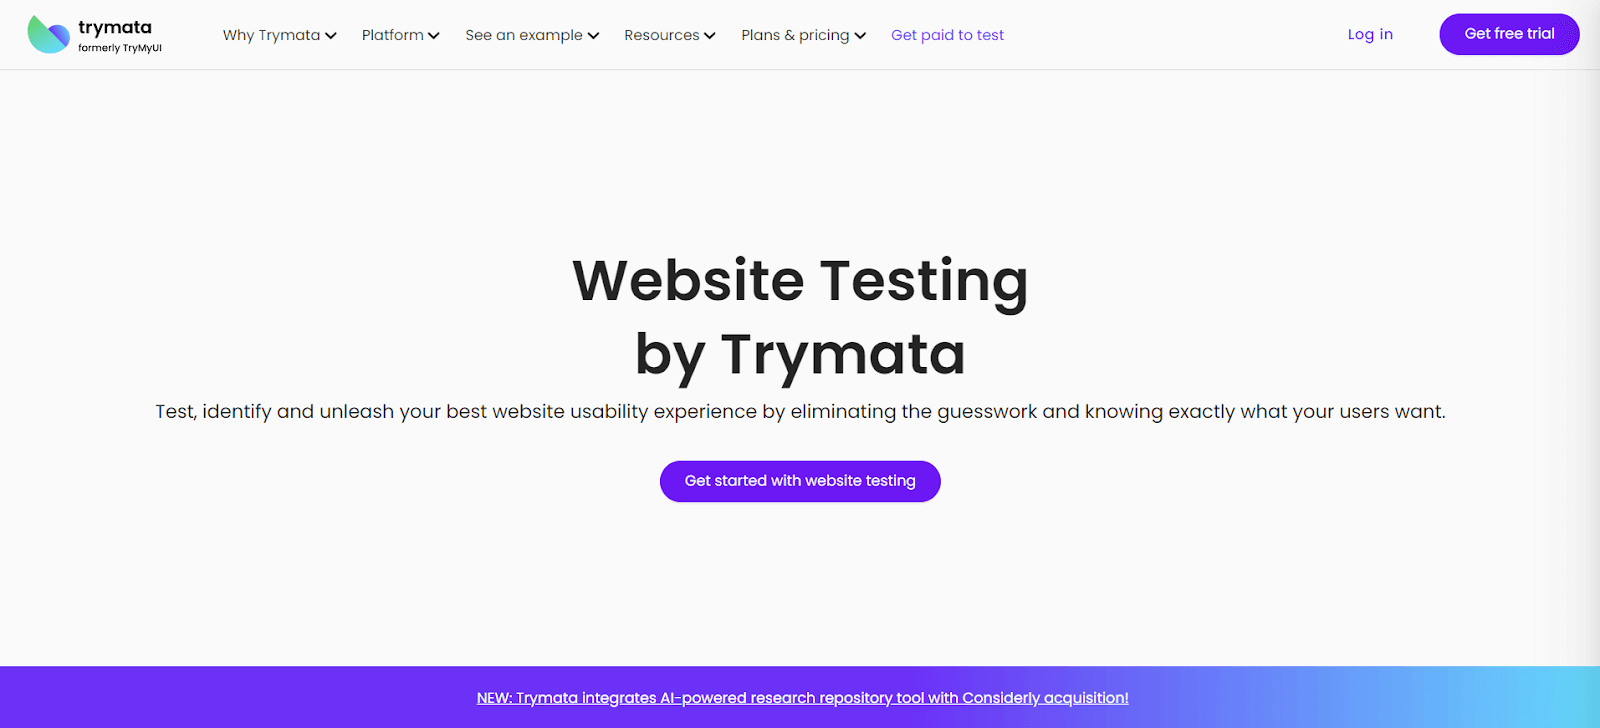 TryMata